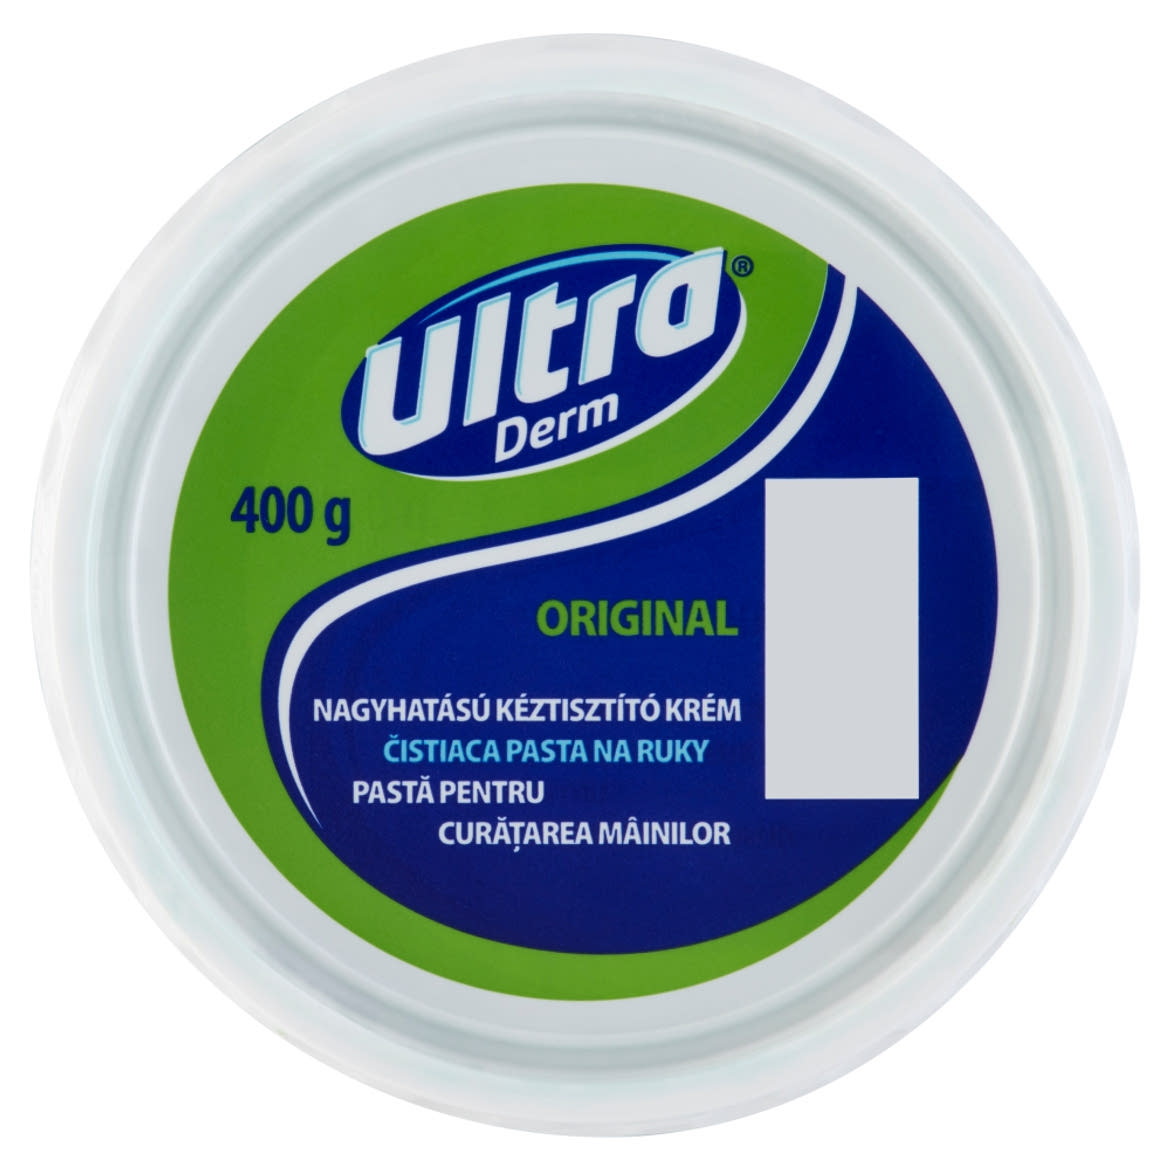 Ultra Derm Original nagyhatású kéztisztító krém